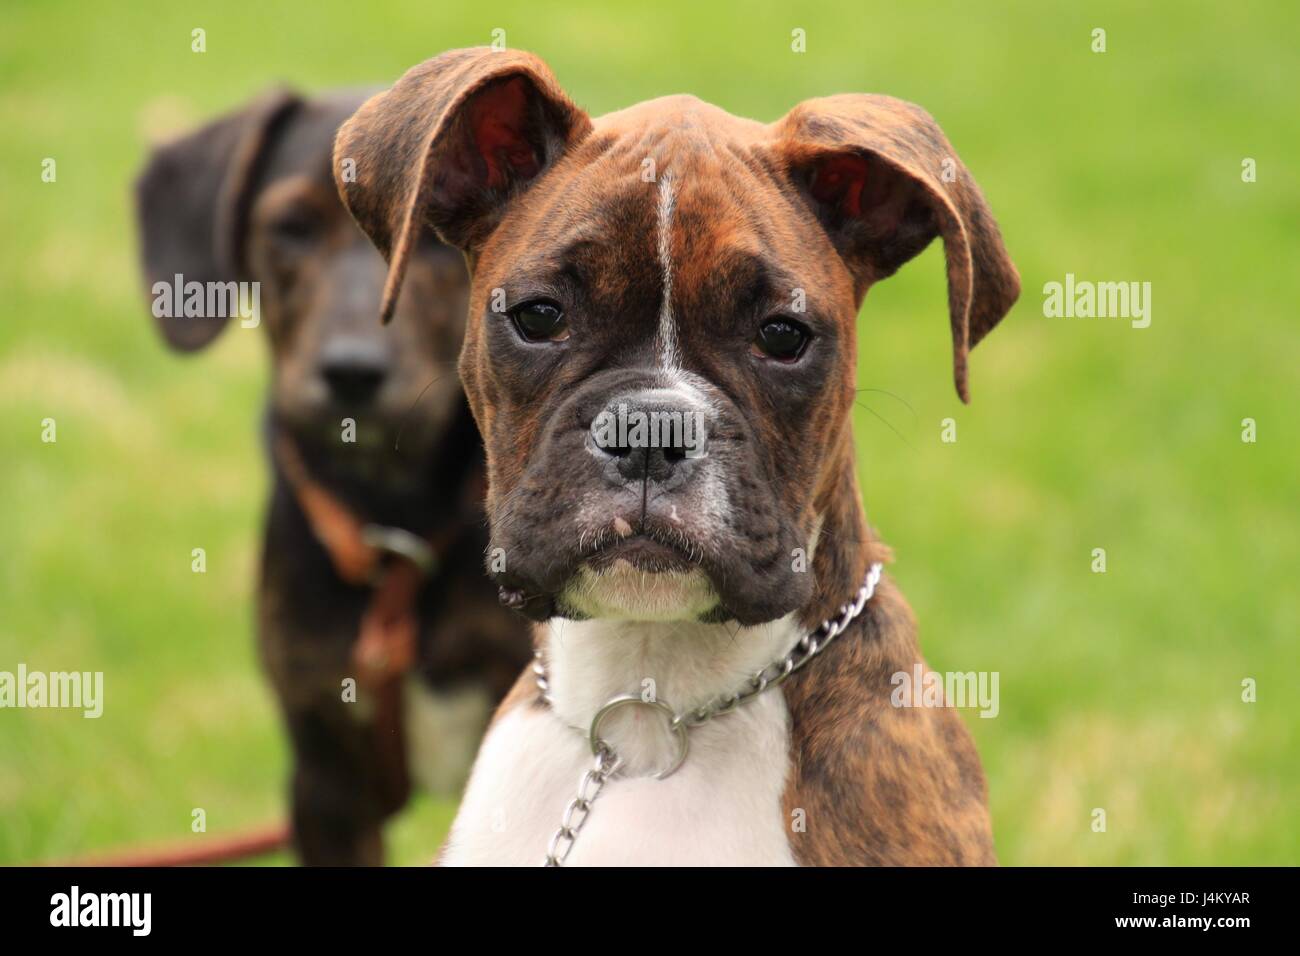 Perros boxer atigrados fotografías e imágenes de alta resolución - Alamy